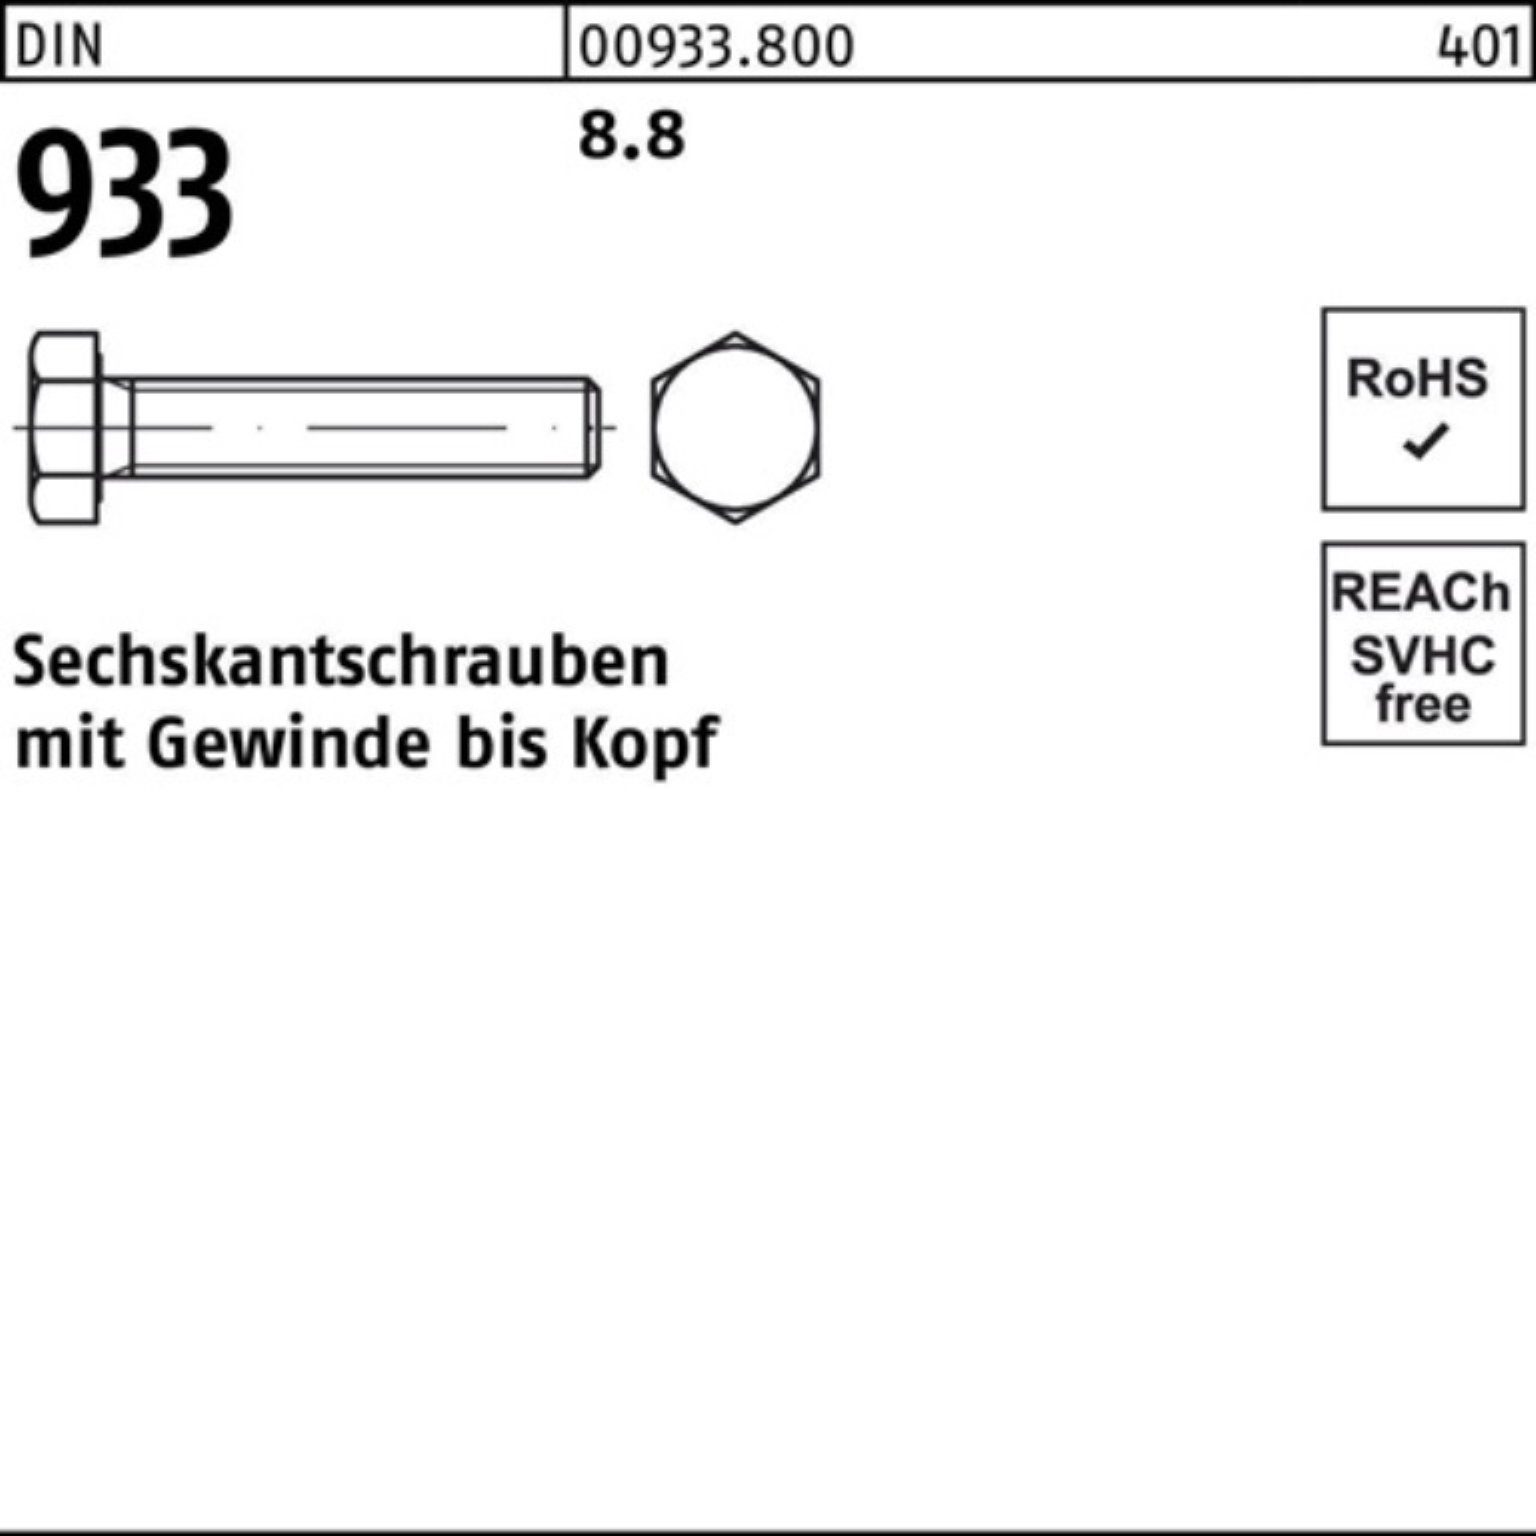 Reyher Sechskantschraube M39x Pack Sechskantschraube 100 DIN Stück 933 8.8 1 DIN VG 100er 933